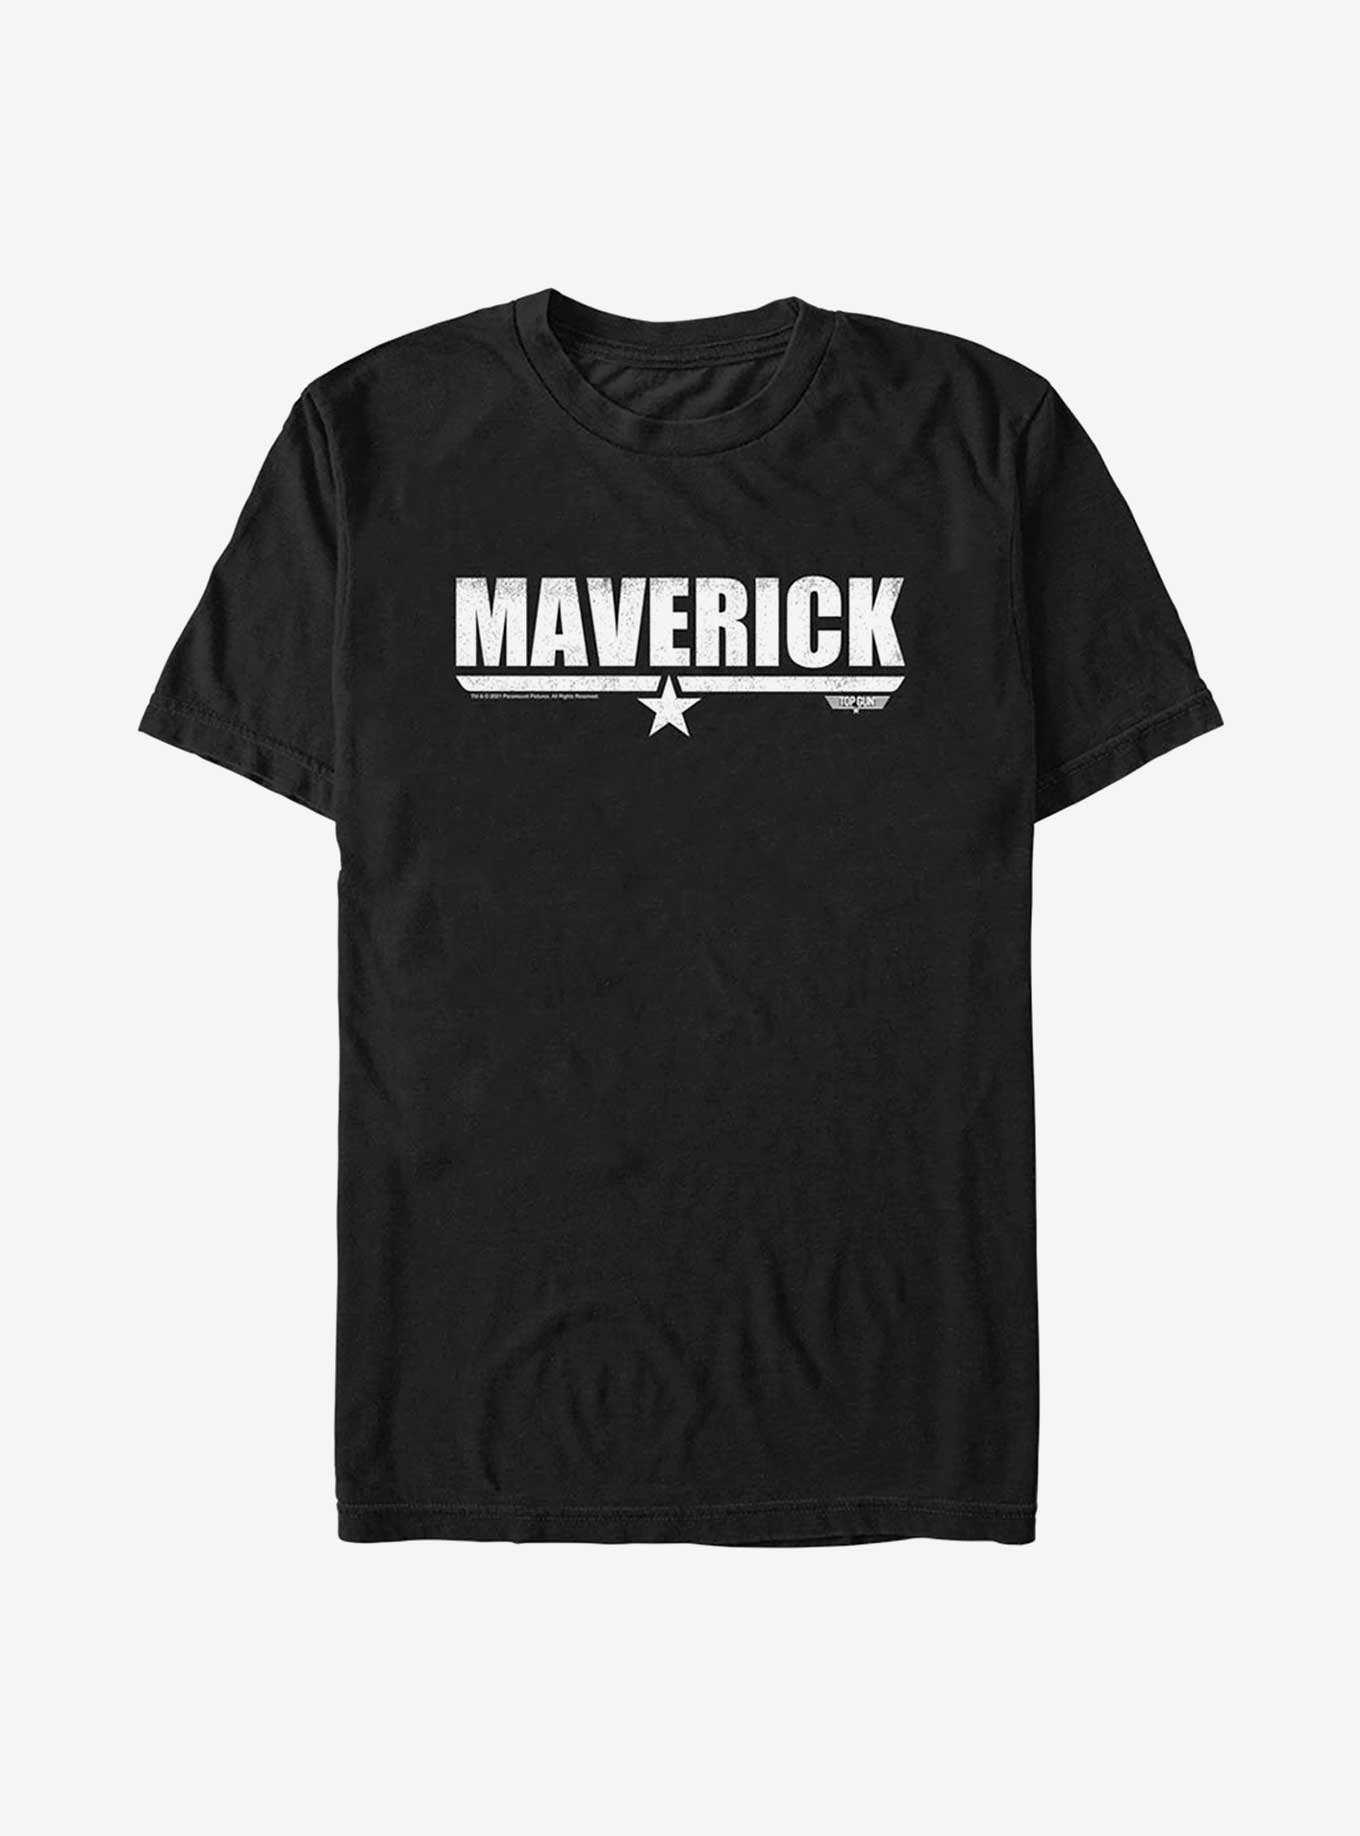 Top Gun Maverick Maverick T-Shirt, , hi-res